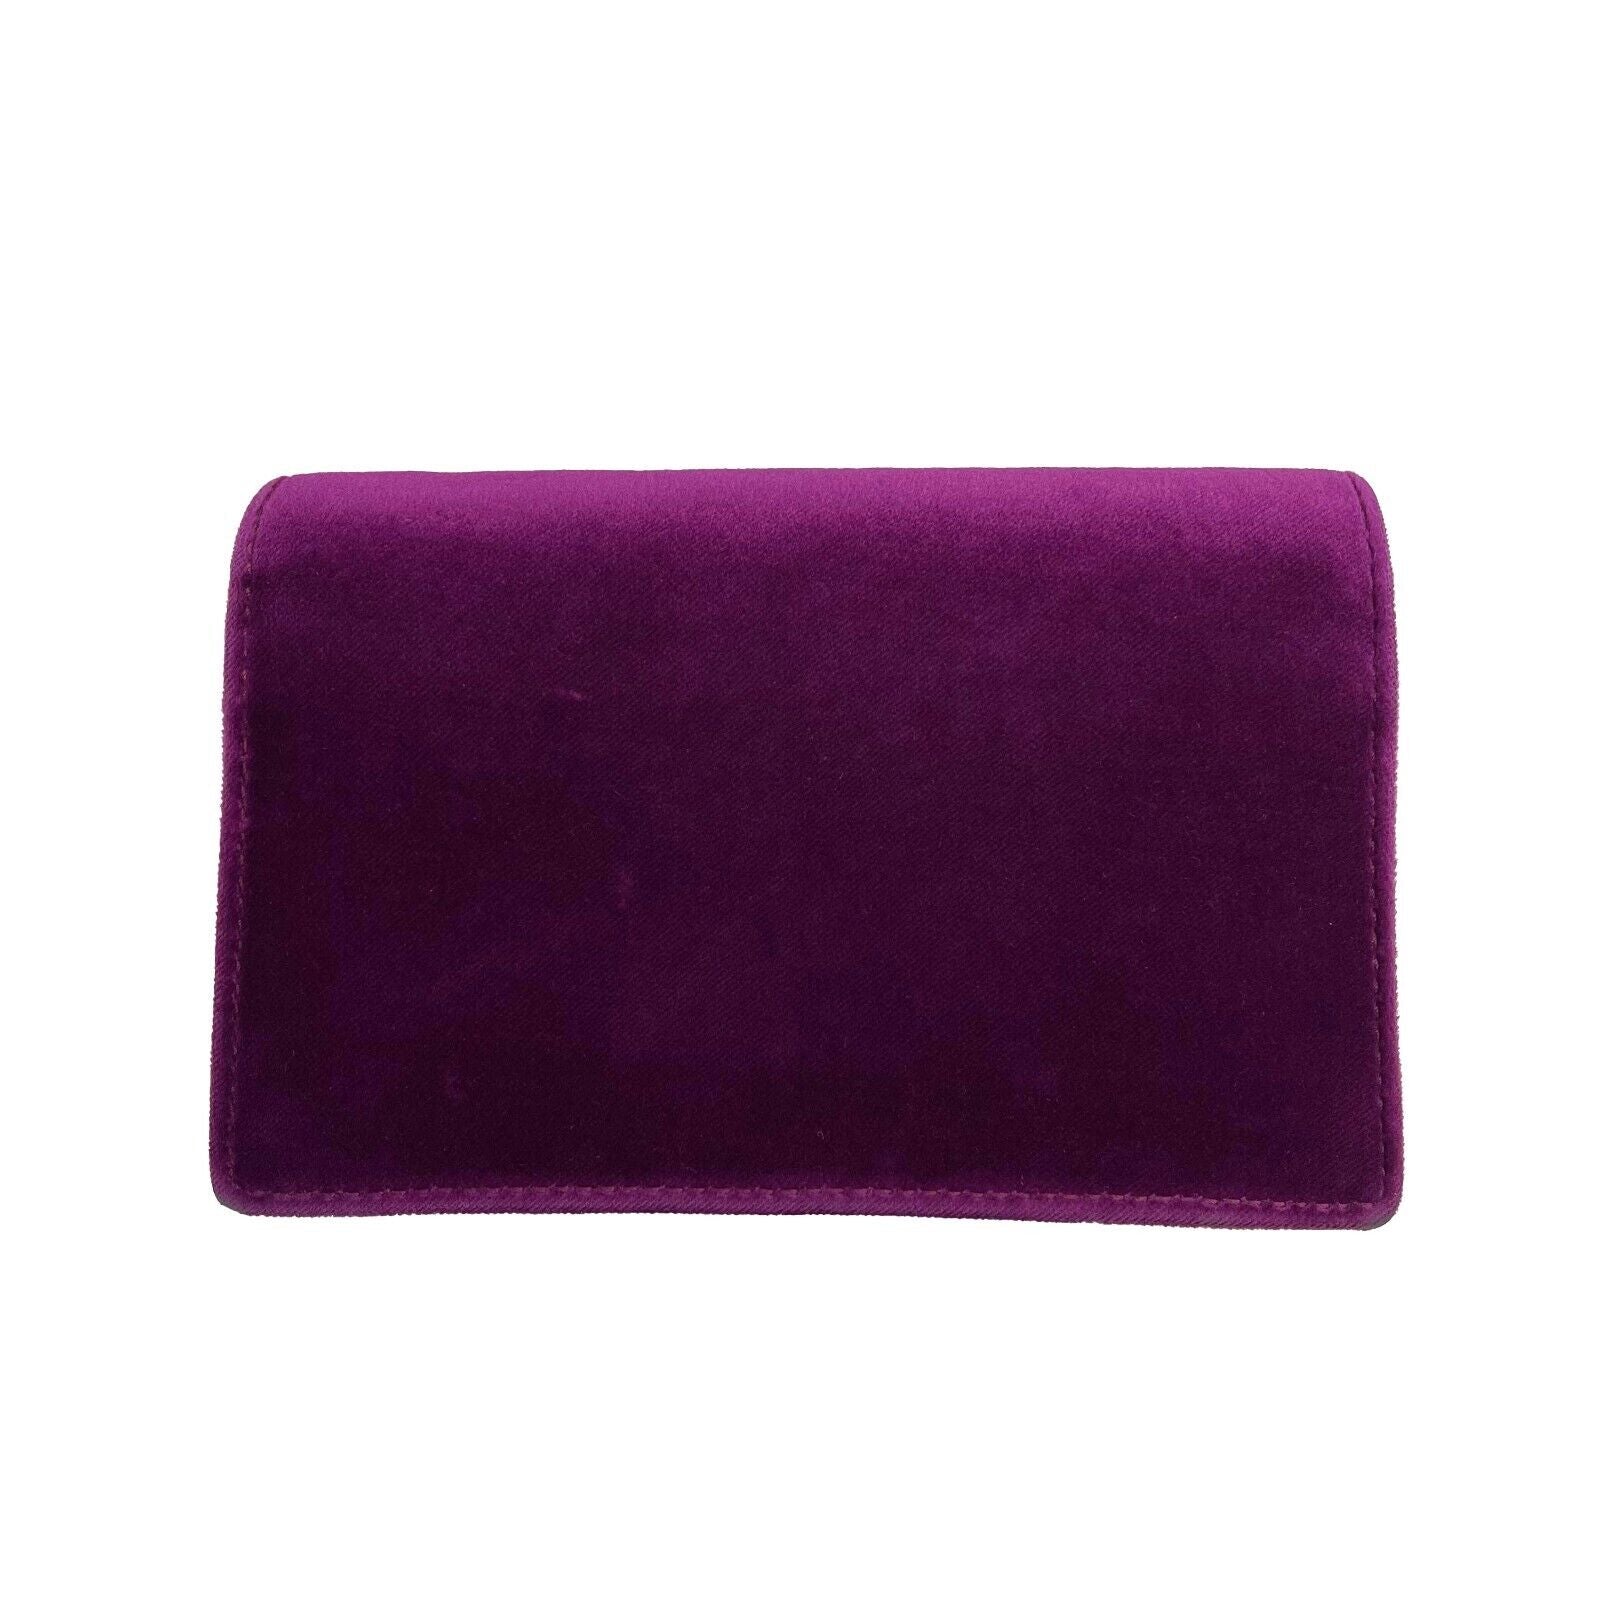 GUCCI - Dionsysus Super Mini - Purple Velvet w/ Removable Chain Crossbody Strap